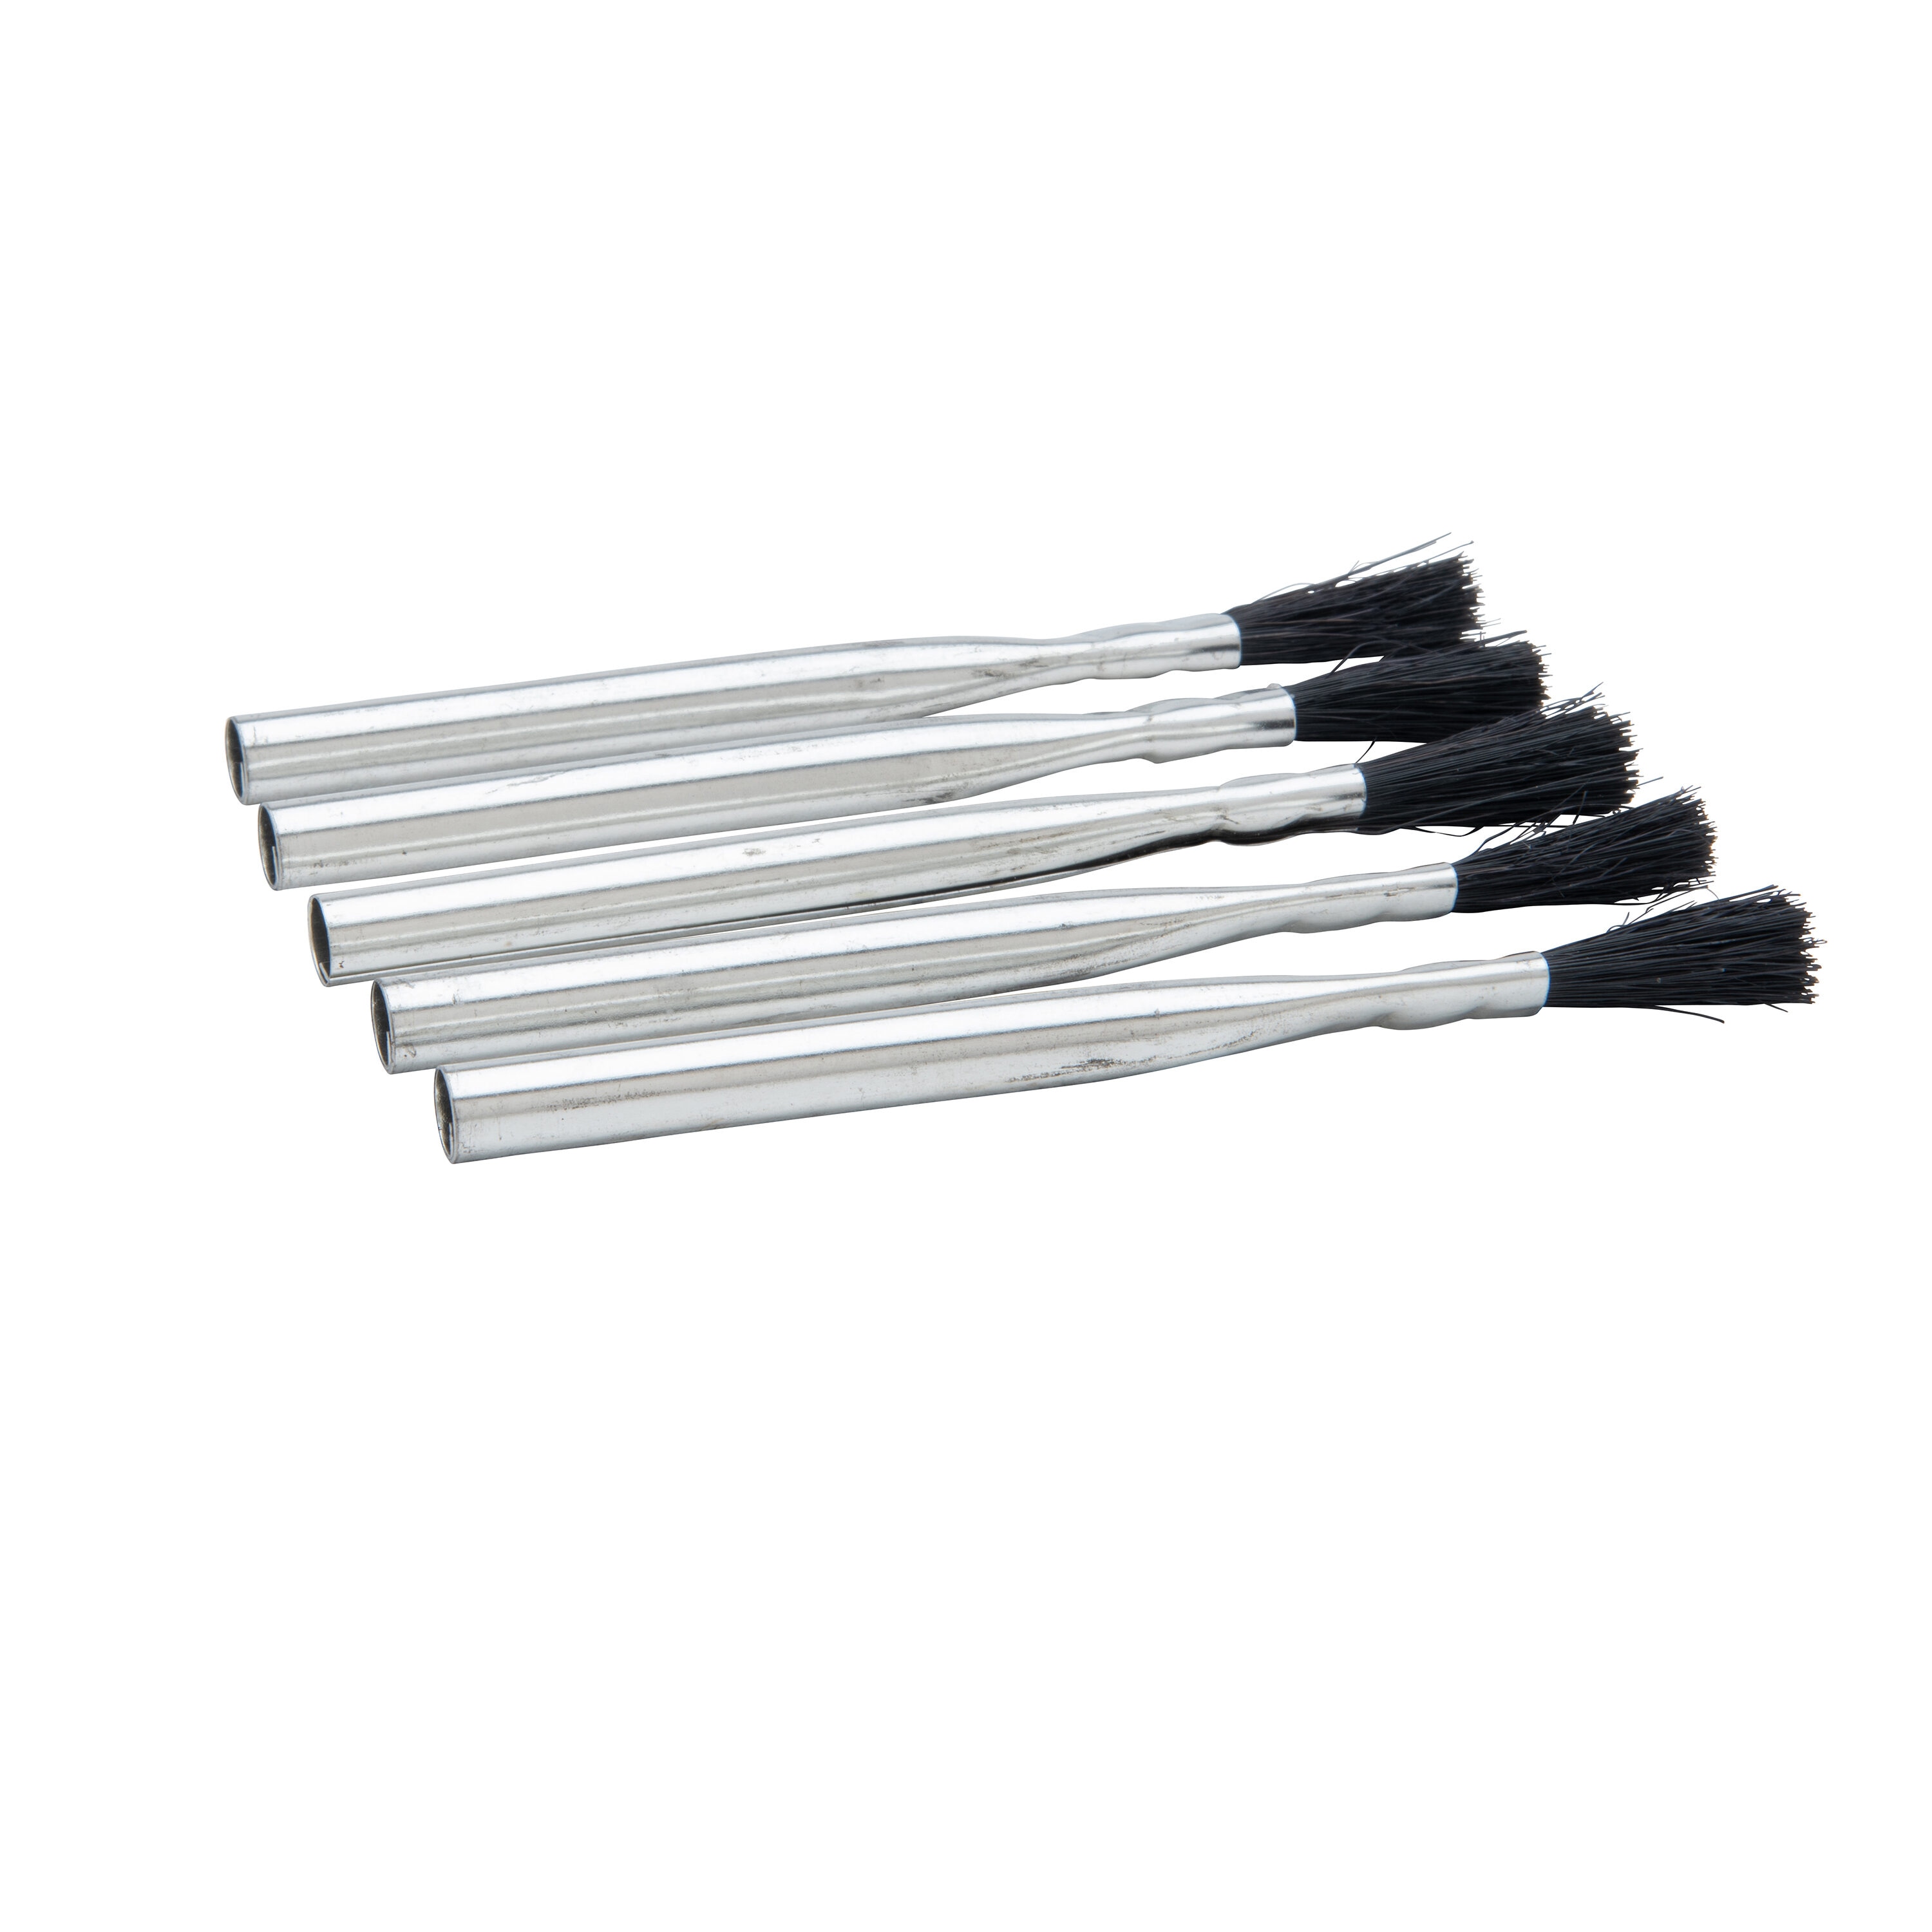 Welding Brush Three Pack (12 packs of 3 Brushes Per Carton) - K3189-1